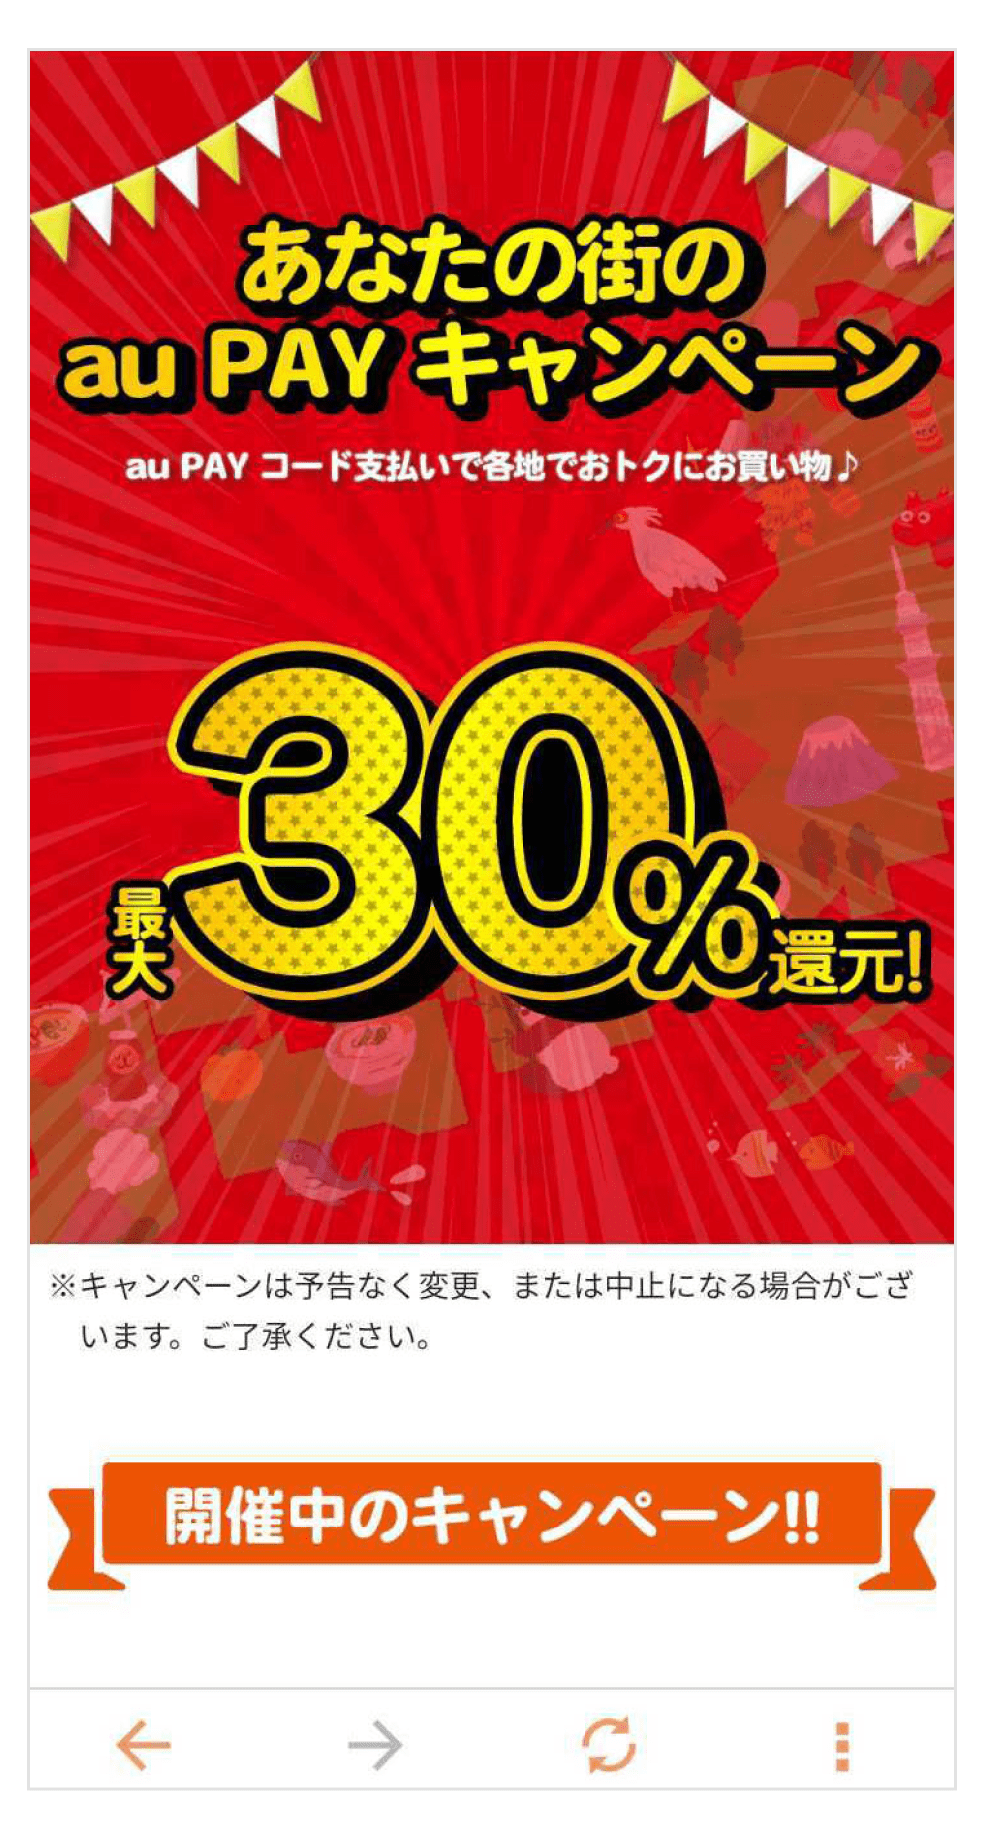 「あなたの街のau PAYキャンペーン」ページ画面。最大30％還元！au PAY コード支払いで各地でおトクにお買い物。